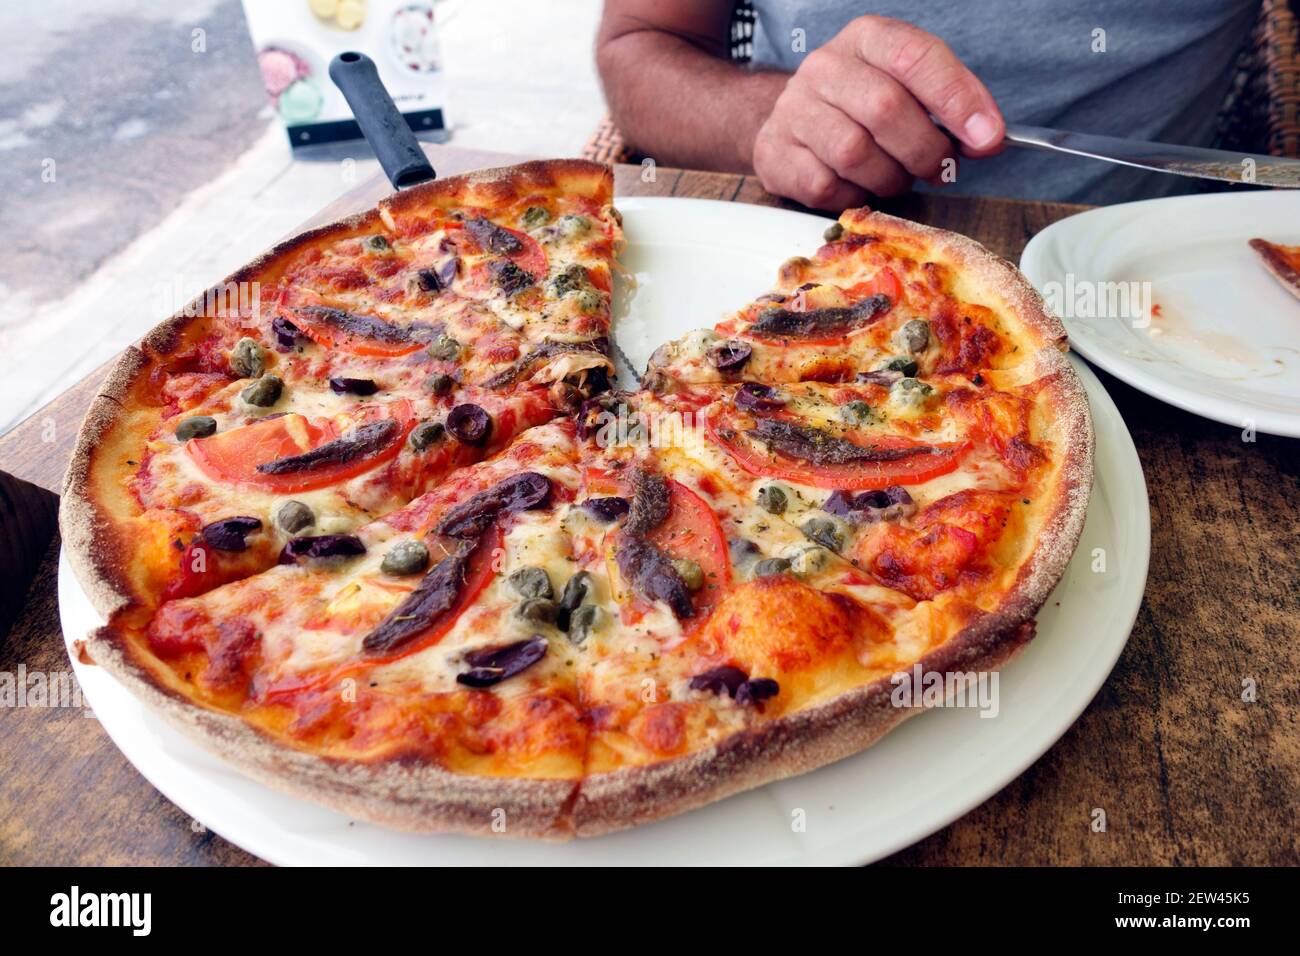 Pizza de anchoa y tomate en una paleta de pizza de mango largo En una taberna griega en la isla de Kos Foto de stock